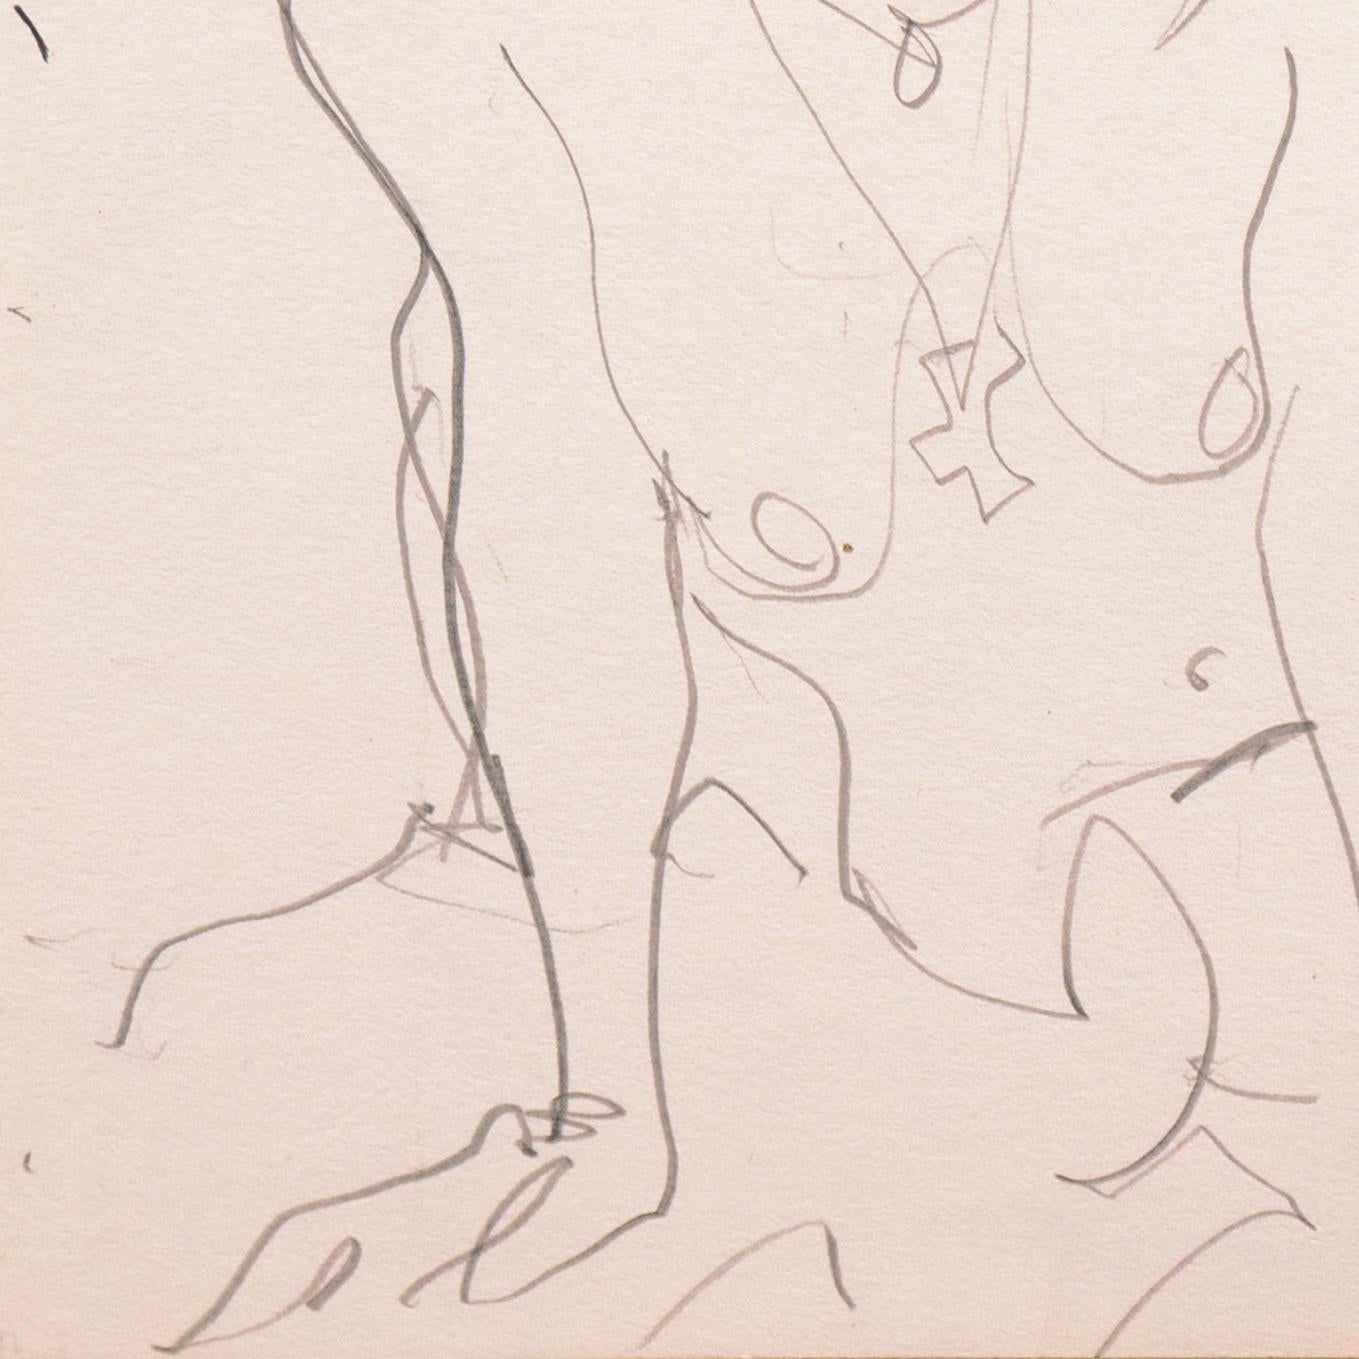 Victor Di Gesu (Amerikaner, 1914-1988) Nachlassstempel verso; gezeichnet um 1955.

Eine elegante, figurative Zeichnung, die den Blick einer jungen Frau zeigt, die sitzend und offen zum Betrachter blickt.

Victor di Gesu, Gewinner des Prix Othon